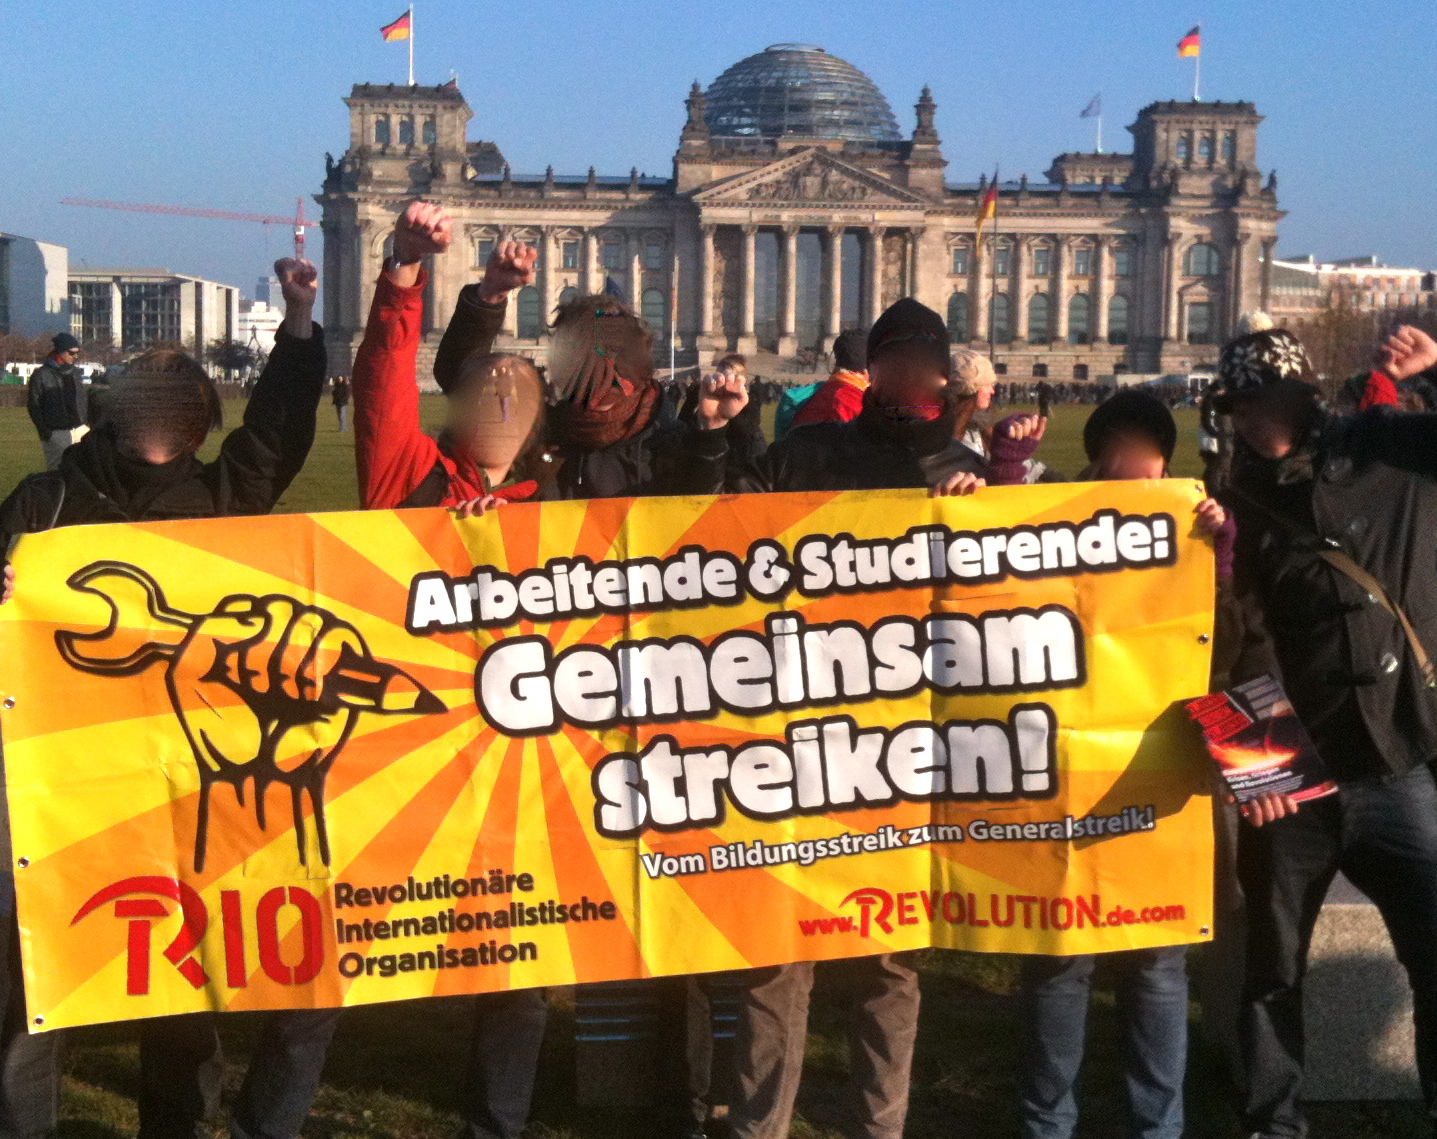 Occupy Bundestag!